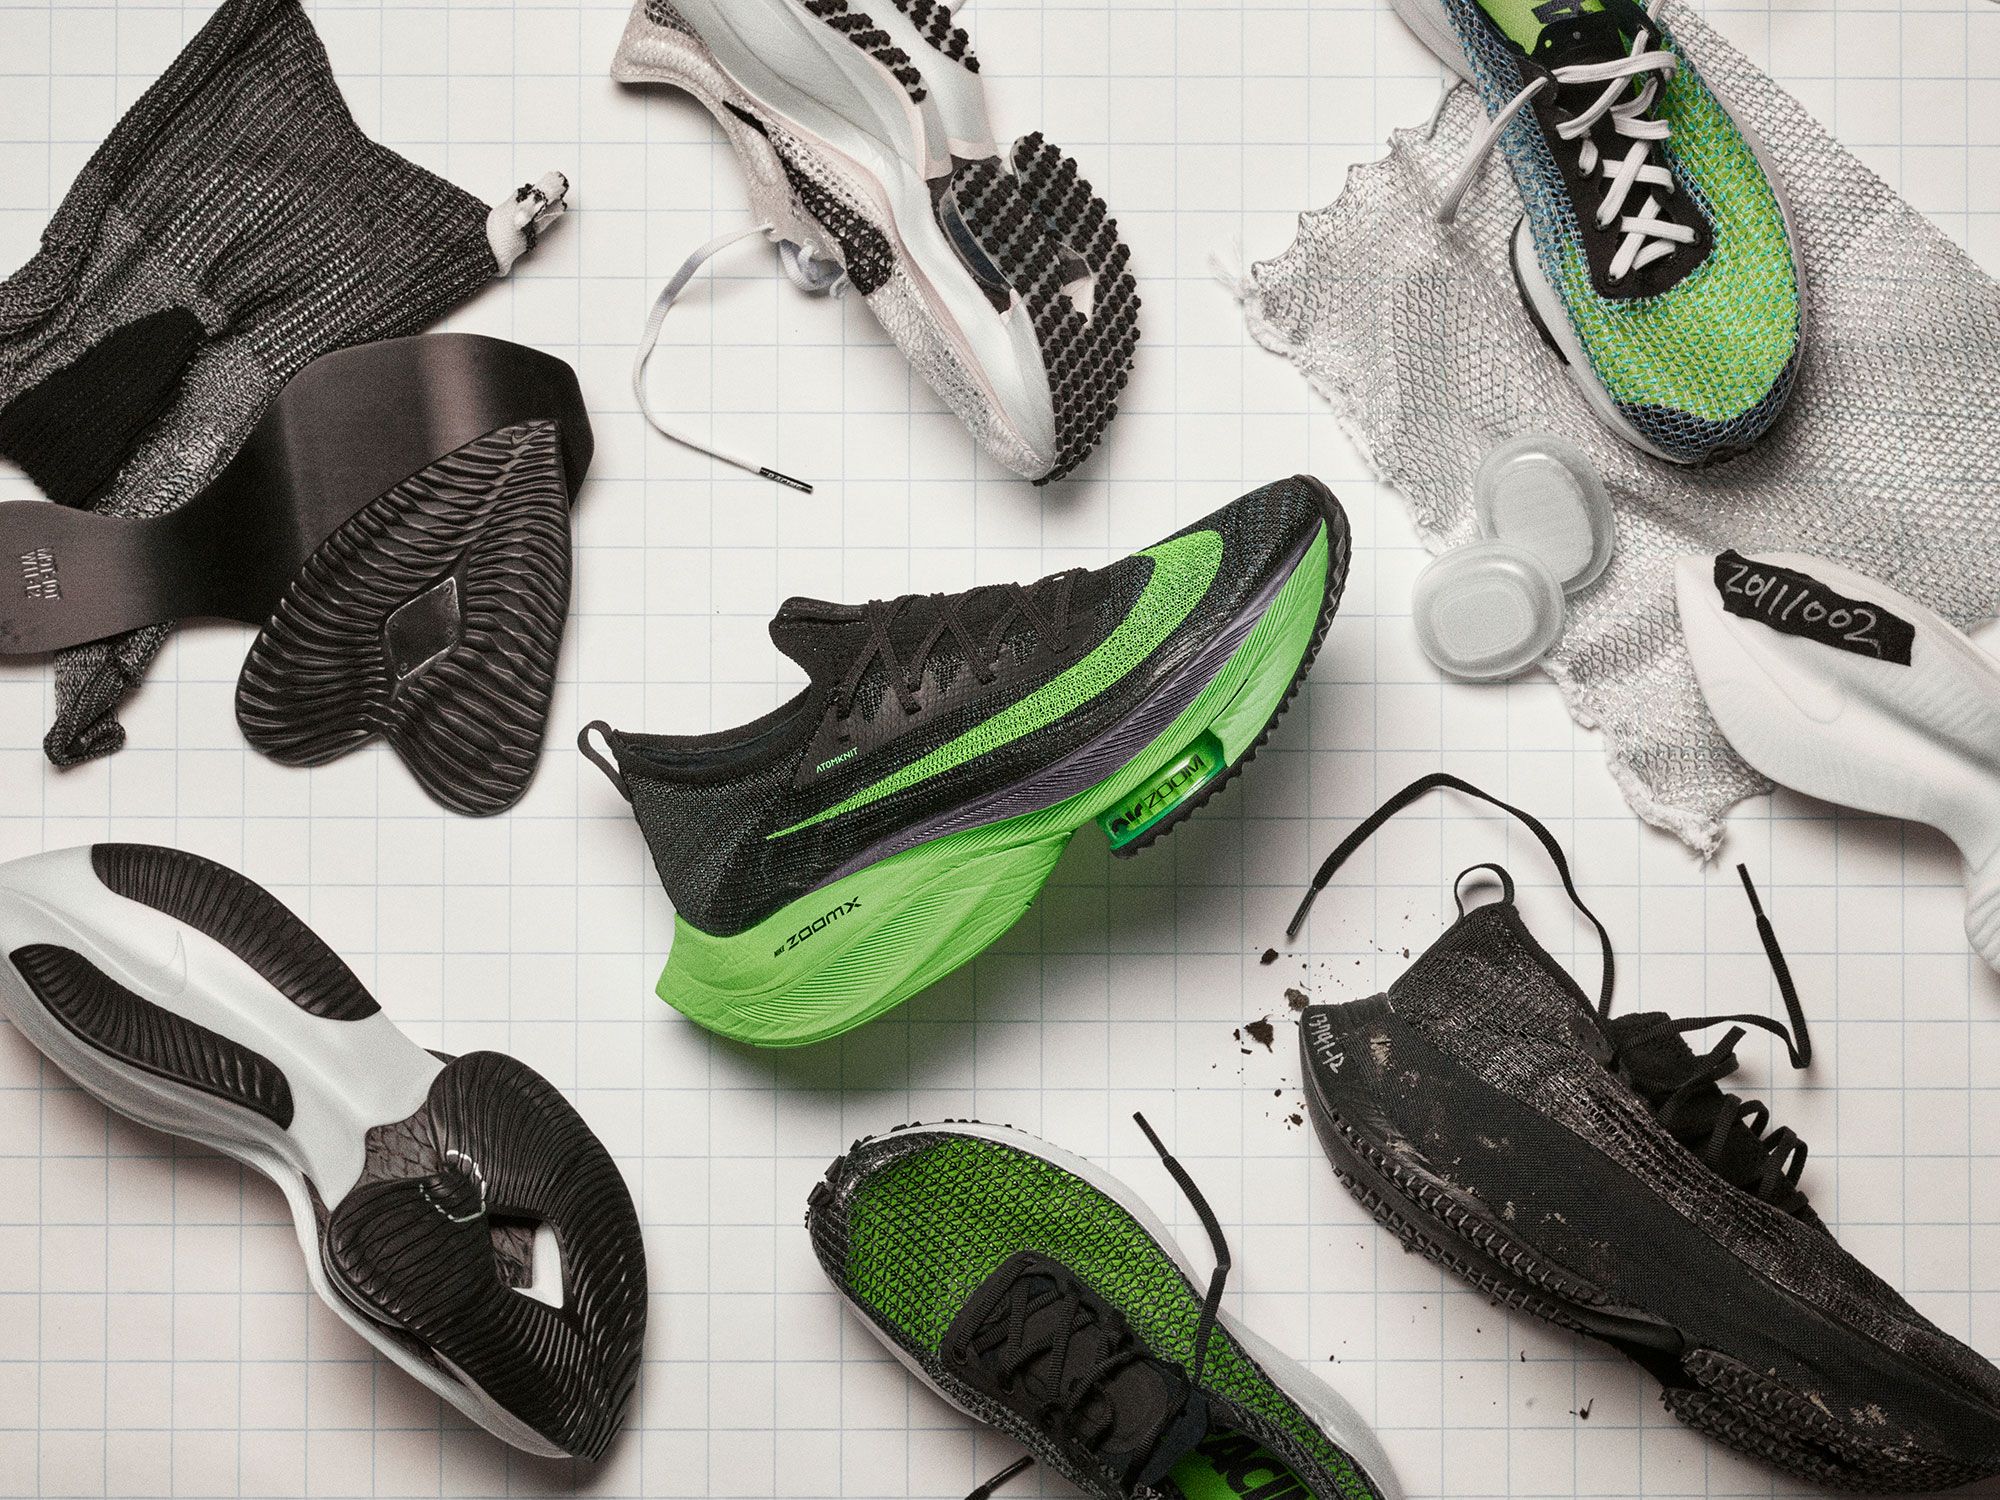 Humanistisch regio Niet verwacht Nike Air Zoom AlphaFly Next% $250 Running Shoe Wear Test Review